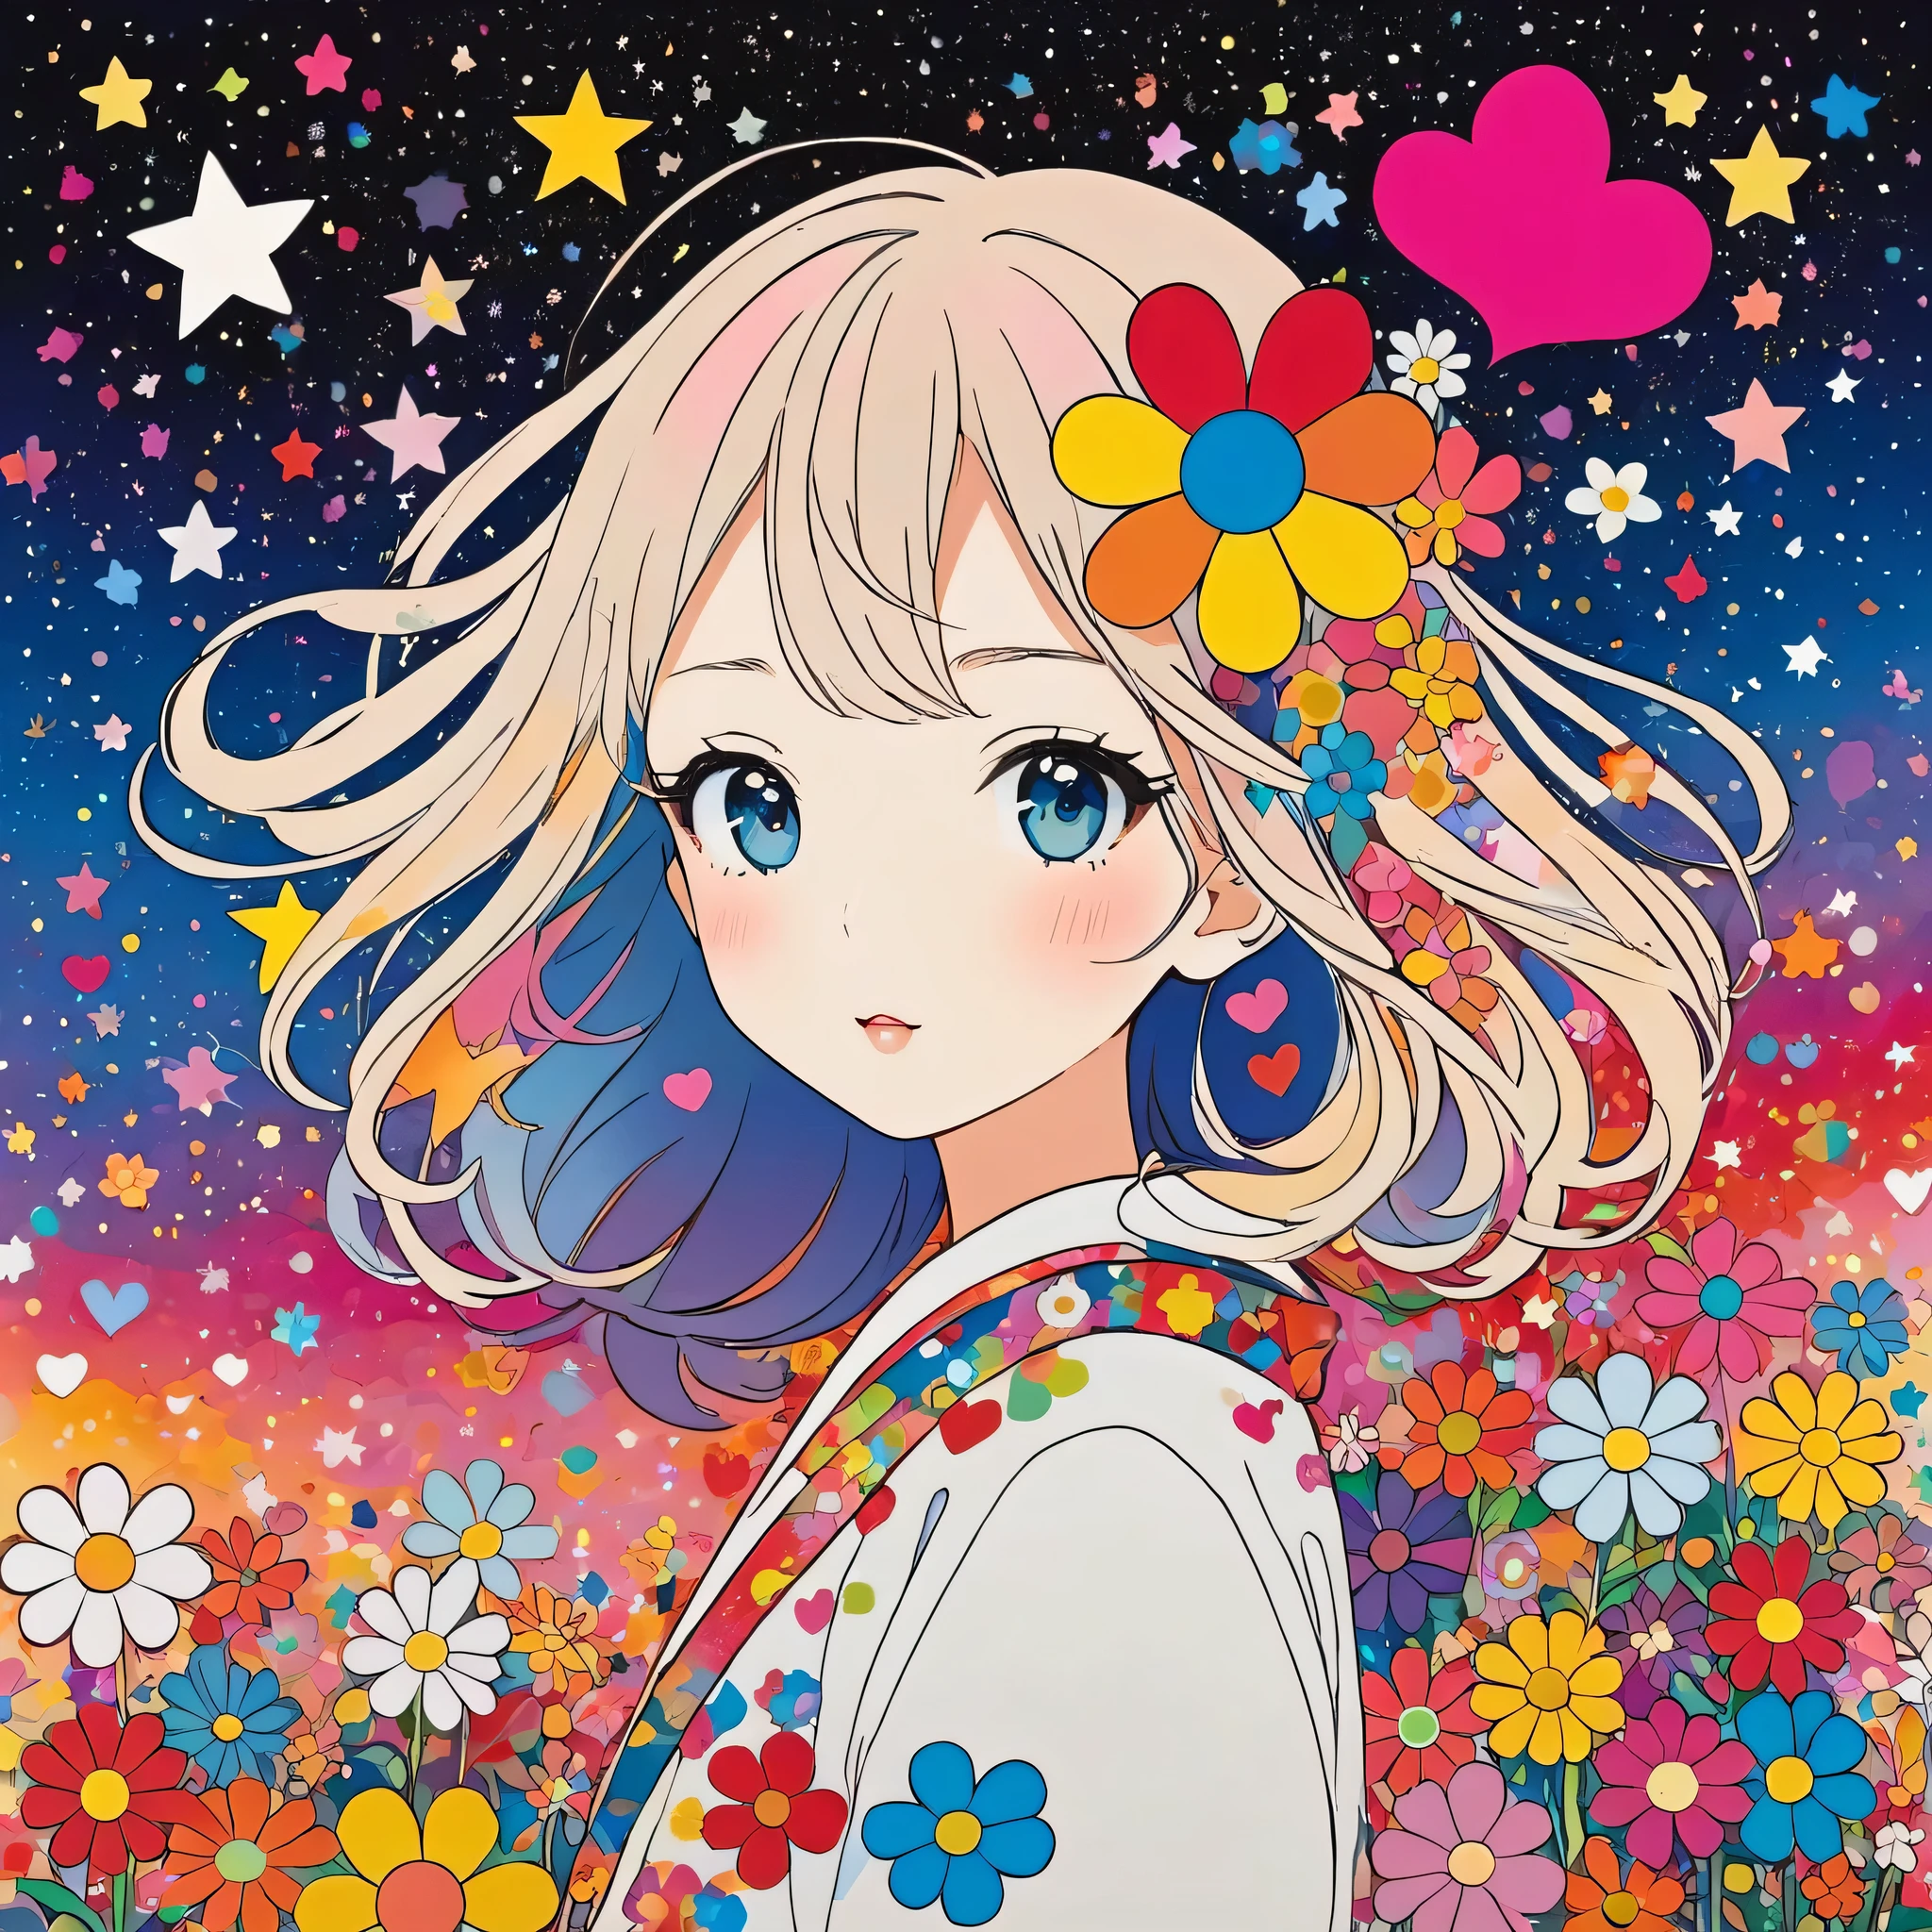 El estilo Takashi Murakami, Inicialismo de línea simple，Arte abstracto，Diseño elegante, La chica más bella de todos los tiempos., El fondo es polvo de estrellas., corazones de colores, Flores coloridas,